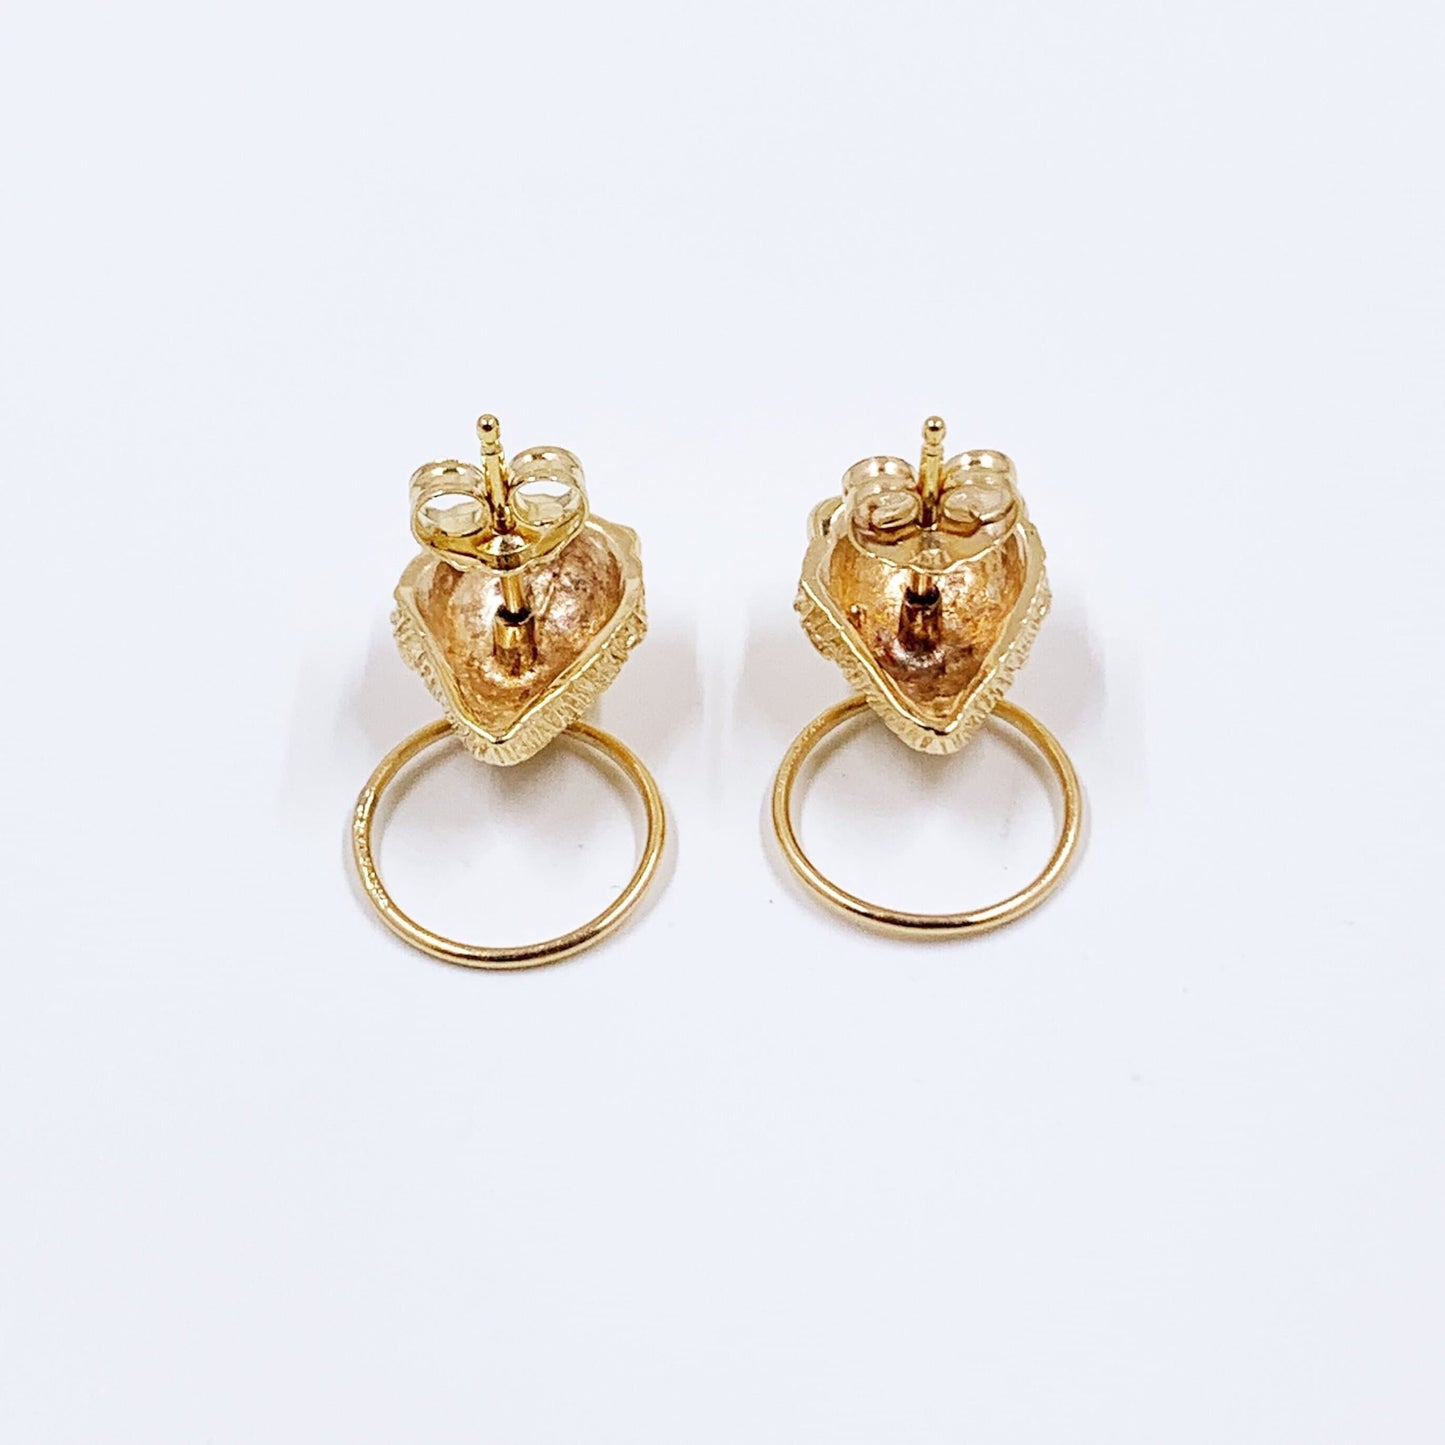 Vintage 14K Carla Lion Door Knocker Stud Earrings | Yellow Gold Lion Stud Earrings | Classic 14K Gold Earrings